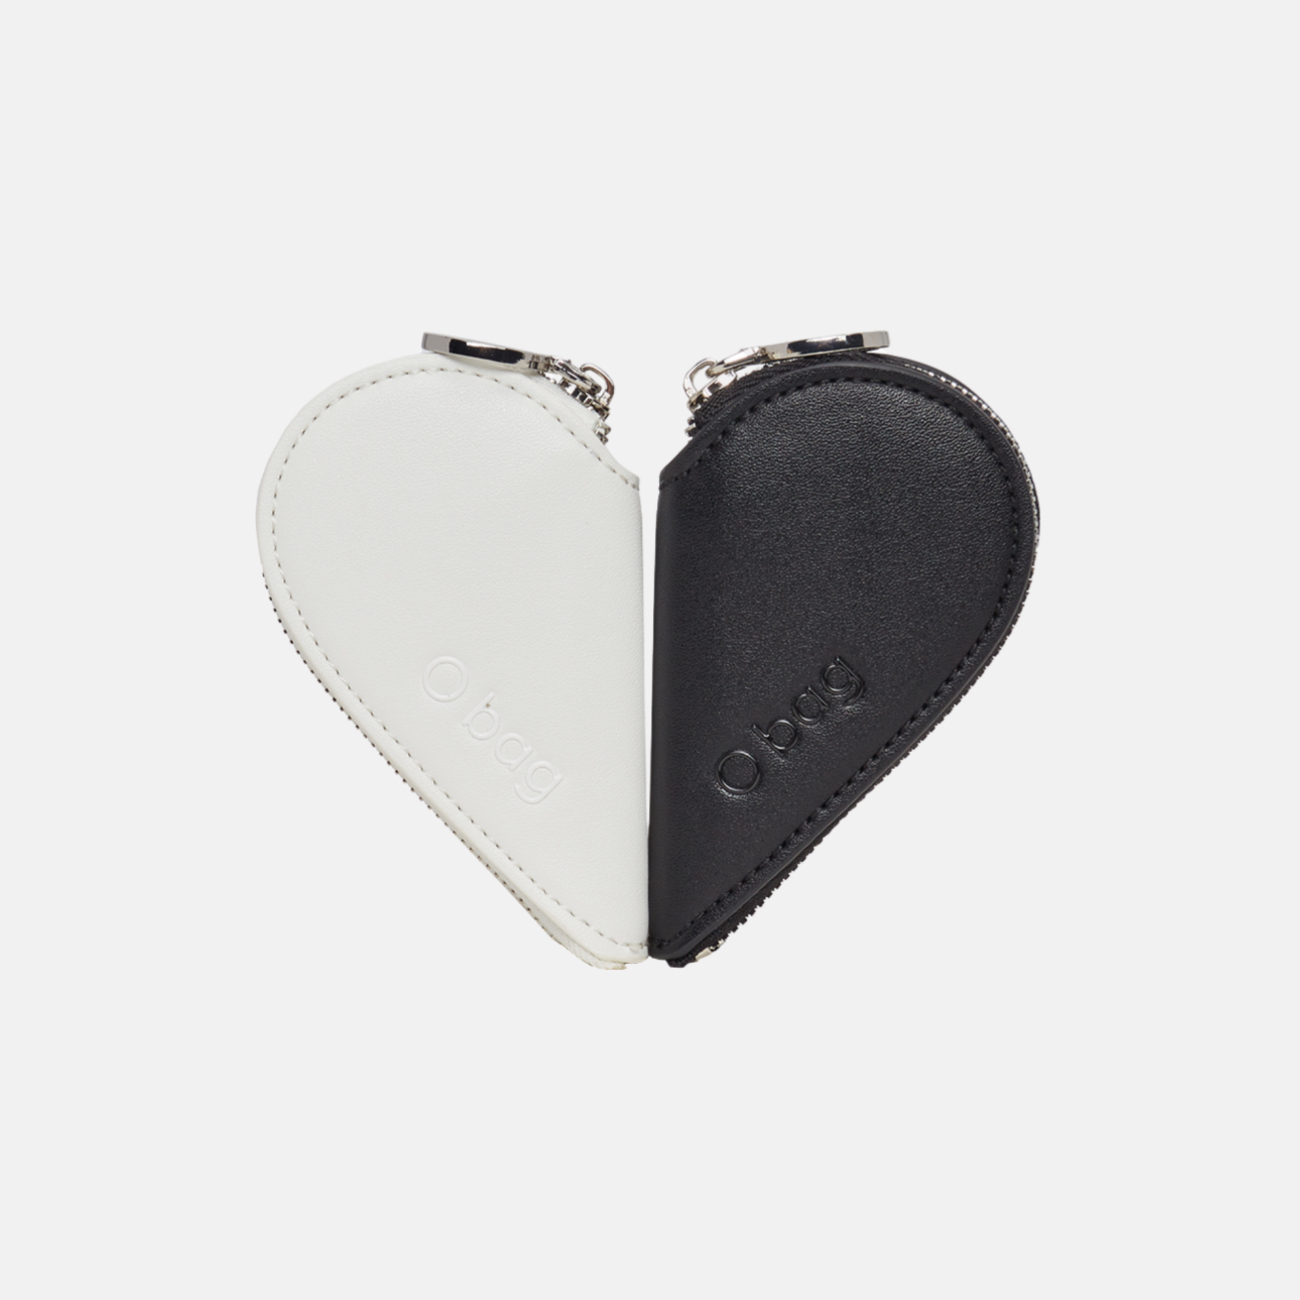 Caroline bölünebilir kalp şekilli siyah/beyaz bozuk para cüzdanı